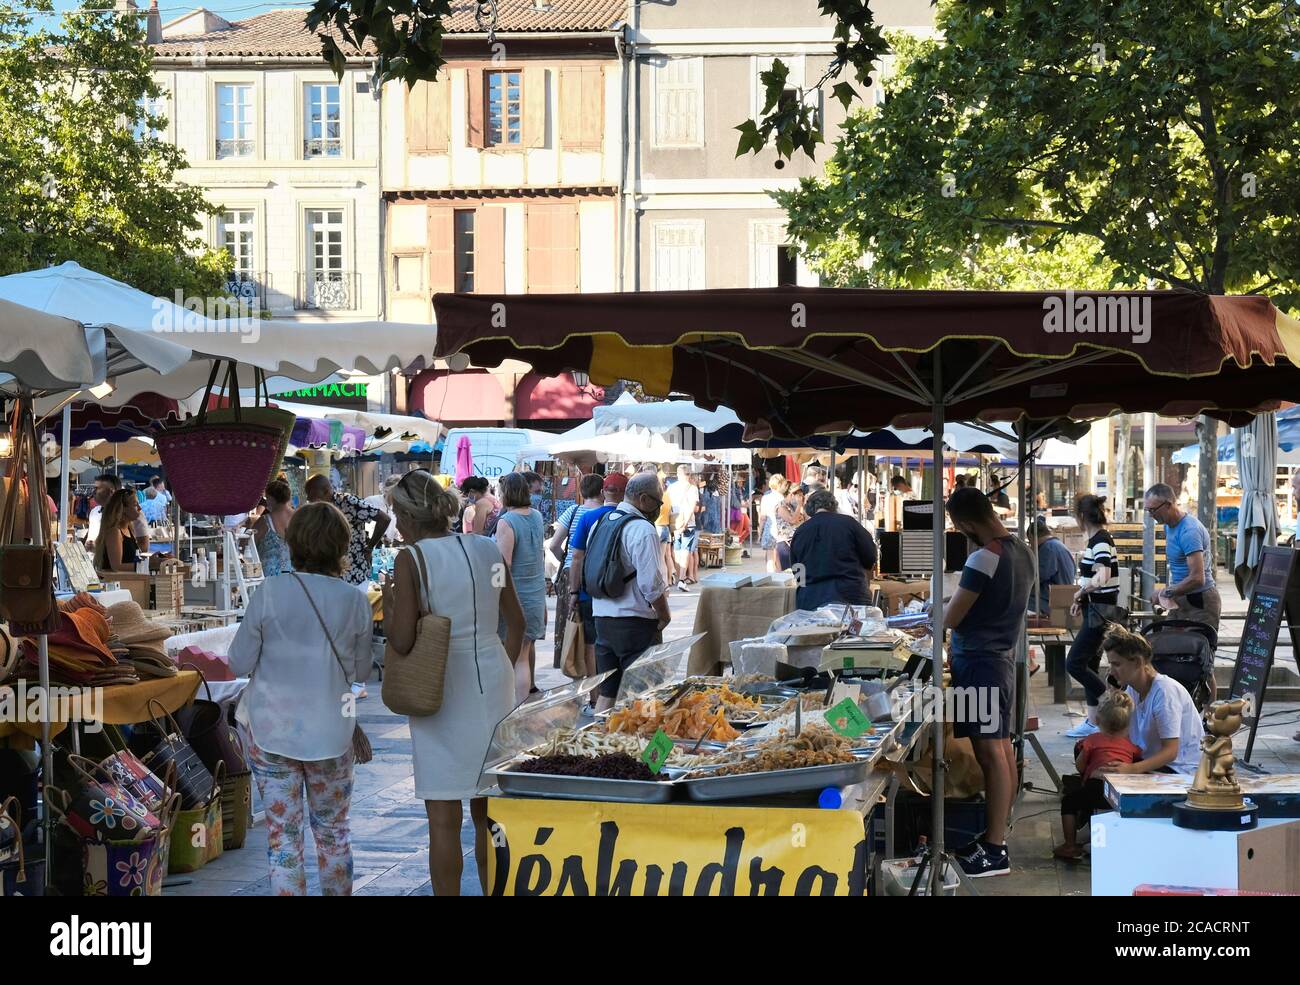 Limousux Aude France Market Place, Käse und getrocknete Früchte Verkäufer. Handtaschen und Hüte zum Verkauf. Touristen, die Geschenke kaufen Stockfoto